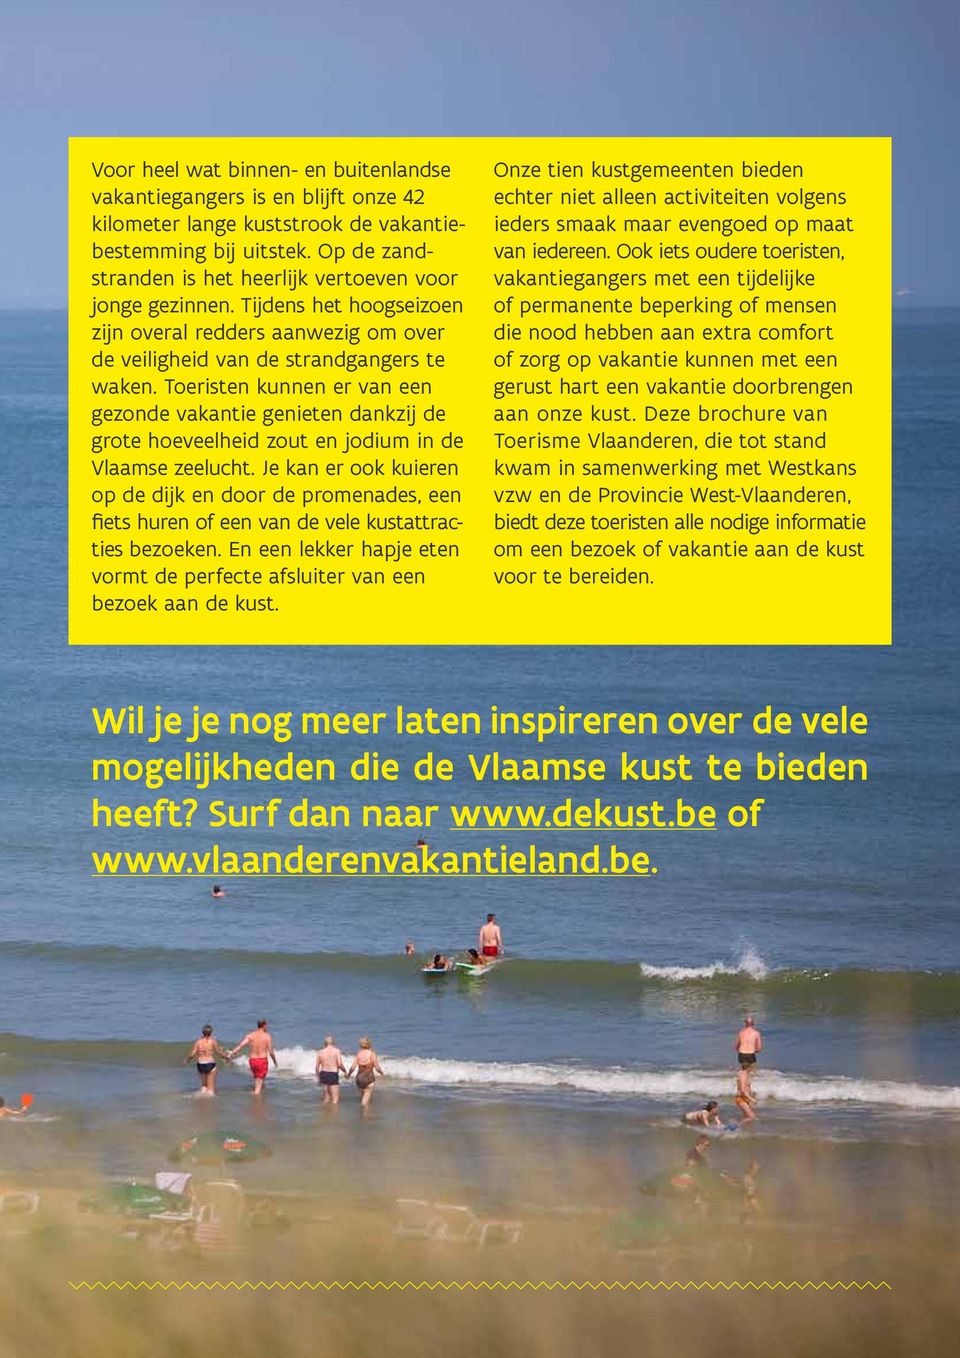 Toeristen kunnen er van een gezonde vakantie genieten dankzij de grote hoeveelheid zout en jodium in de Vlaamse zeelucht.